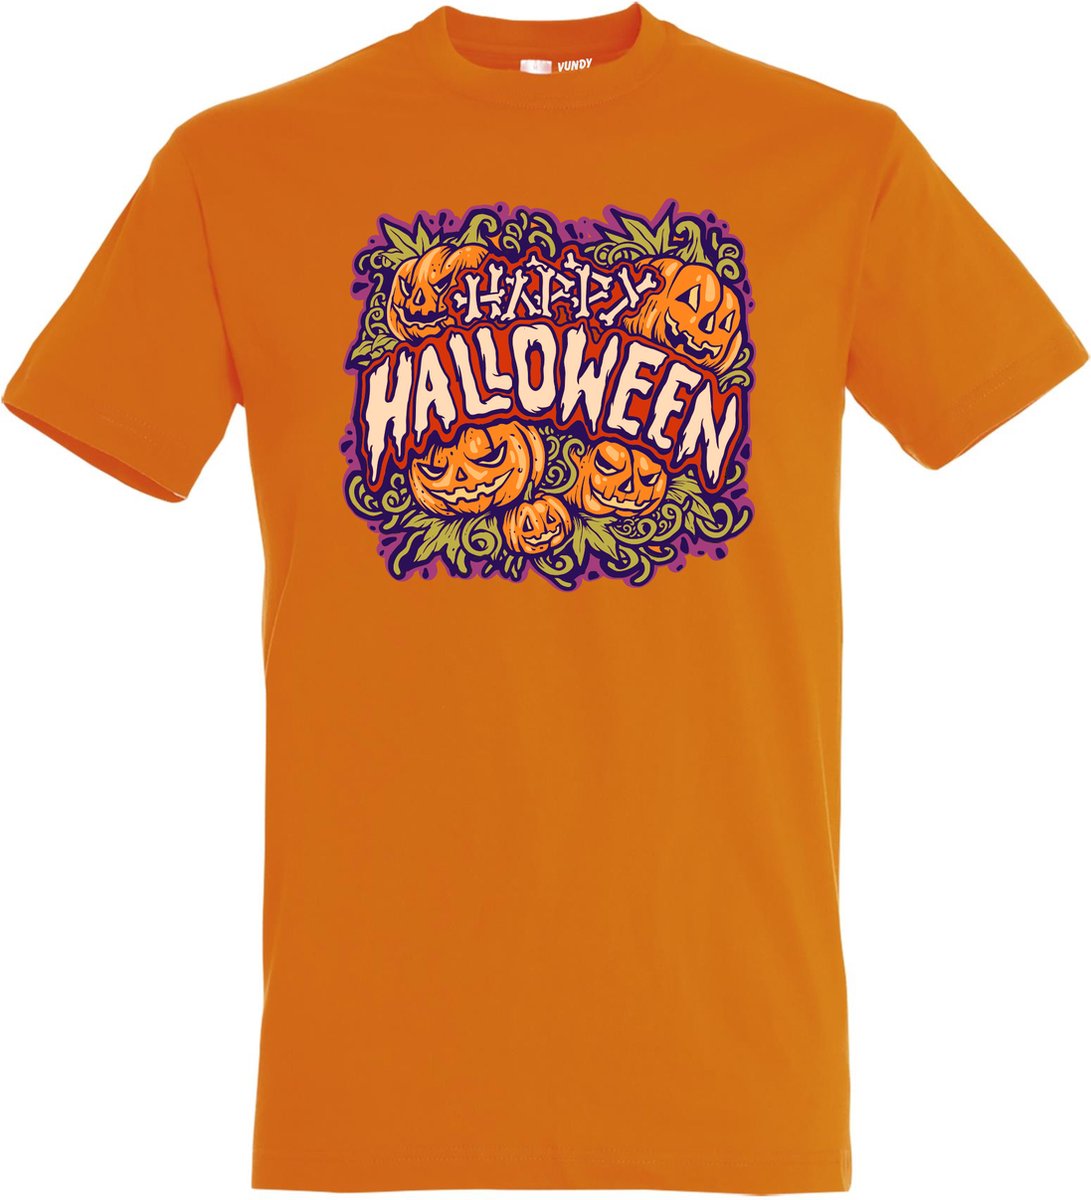 T-shirt Happy Halloween pompoen | Halloween kostuum kind dames heren | verkleedkleren meisje jongen | Oranje | maat S